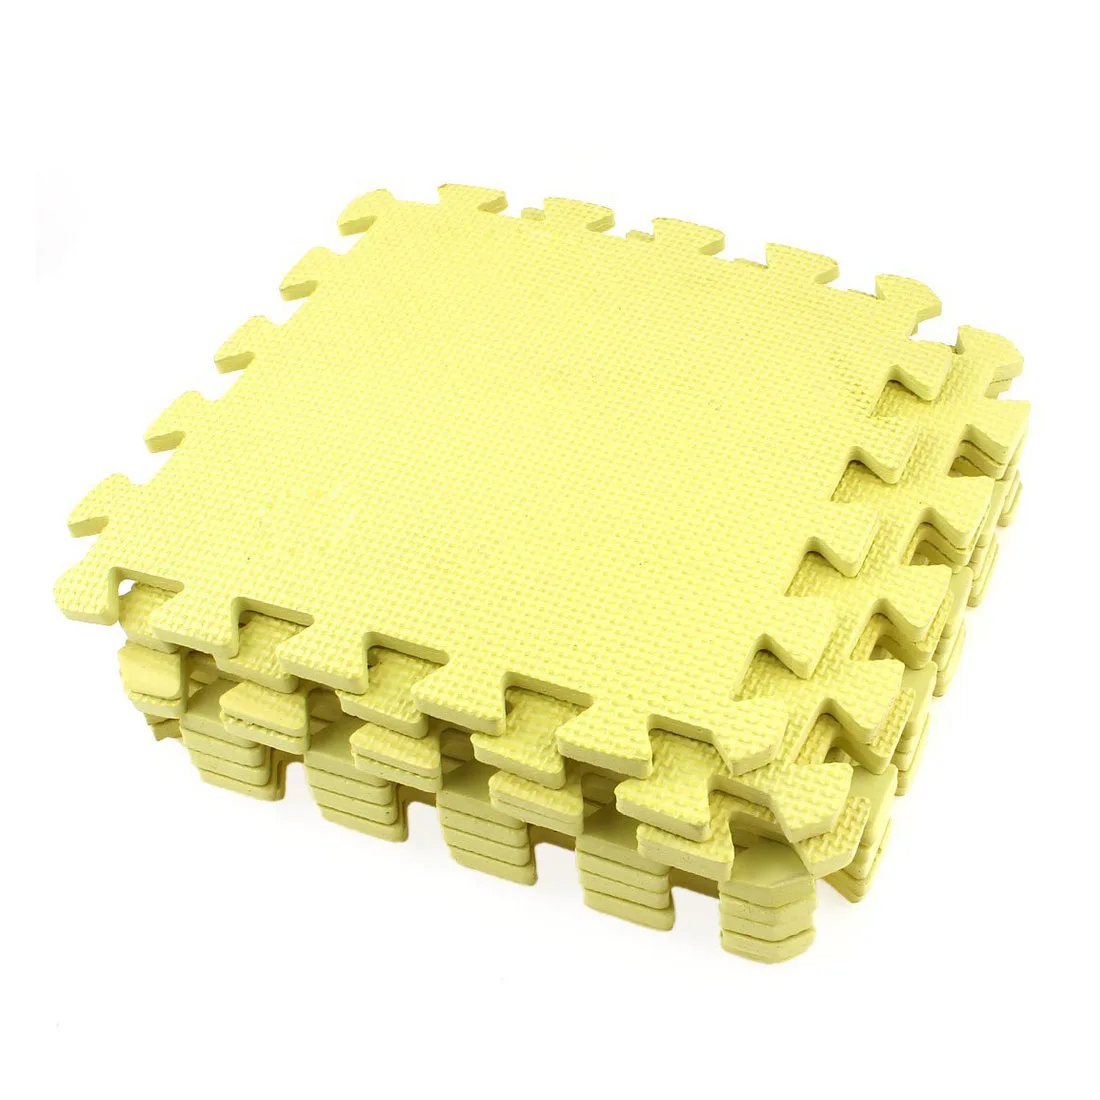 9x желтый eva коврик-пазл защитный коврик Фитнес коврик 28x28x0,8 см